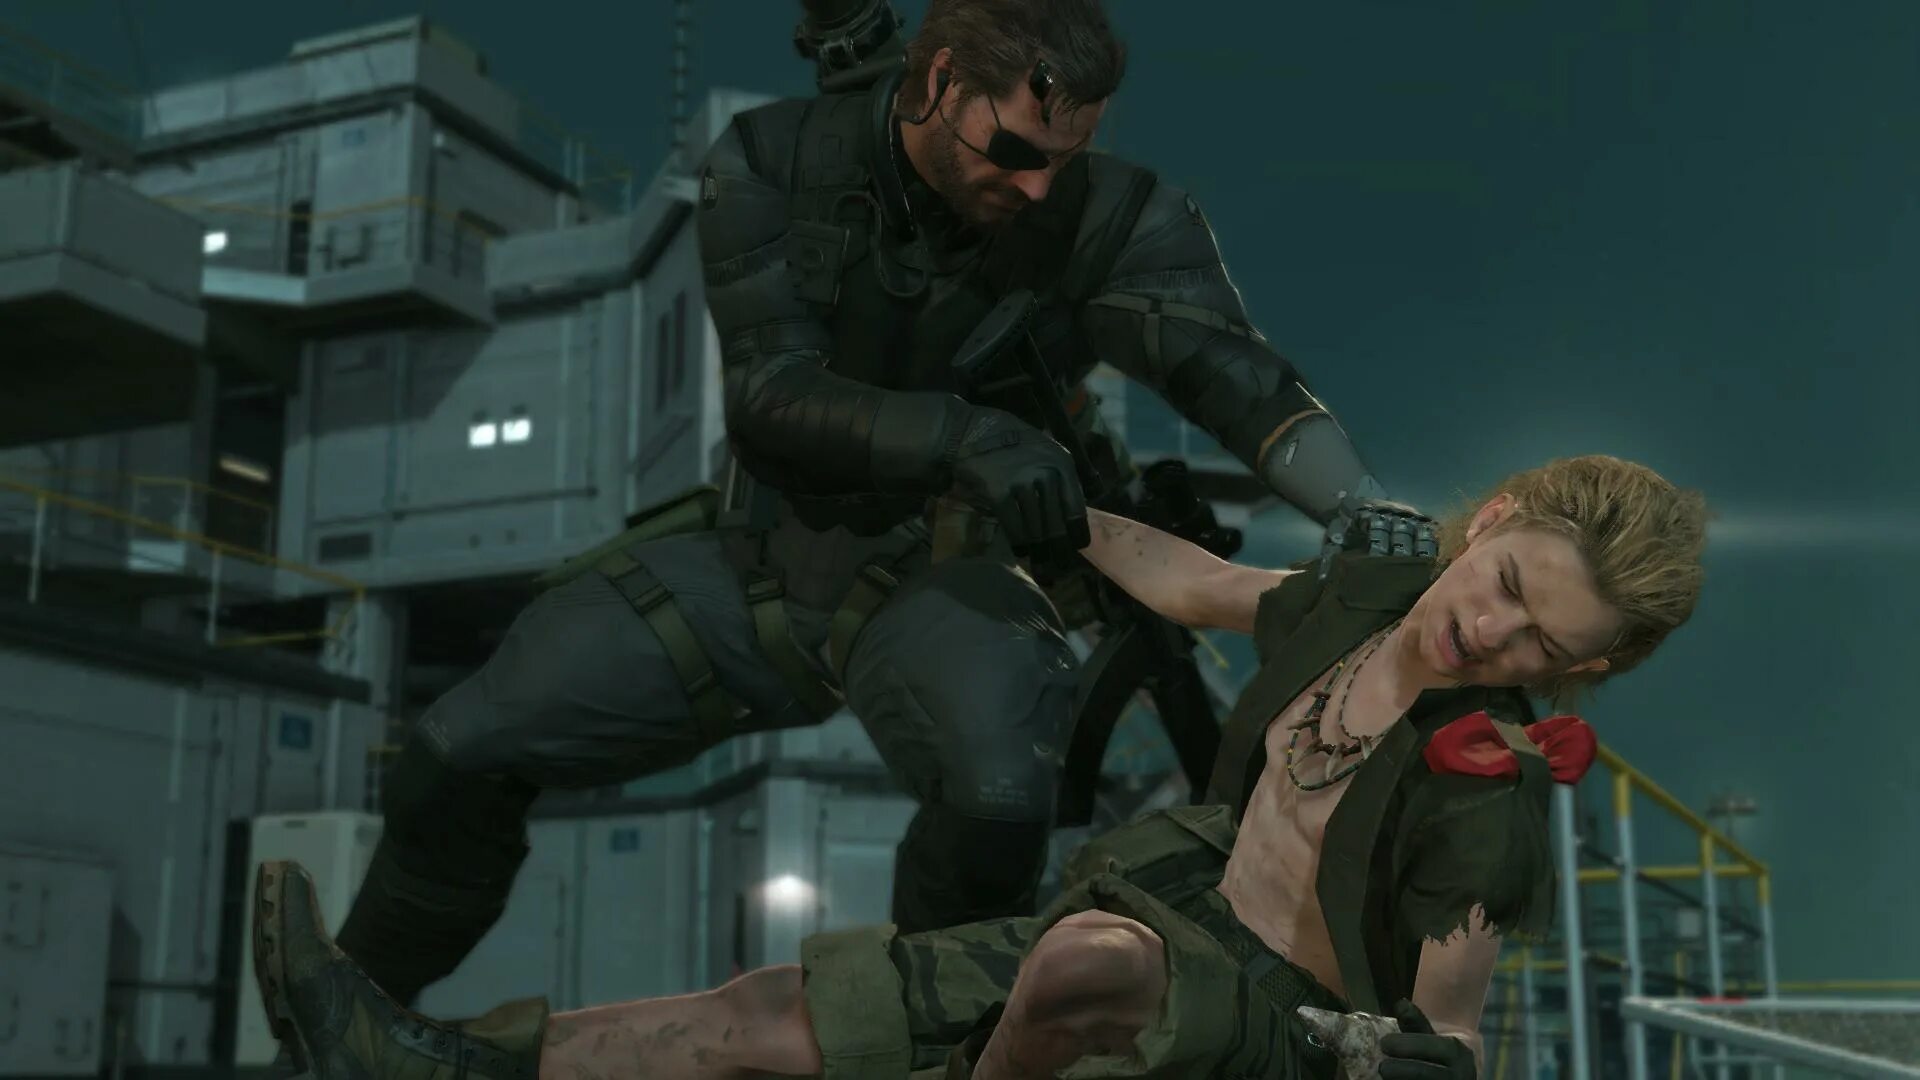 Mgs terminal ru. Metal Gear Solid 5. Metal Gear 5 Phantom Pain коробка. Metal Gear Solid Phantom Pain. Metal Gear Solid v: the Phantom Pain коробка.